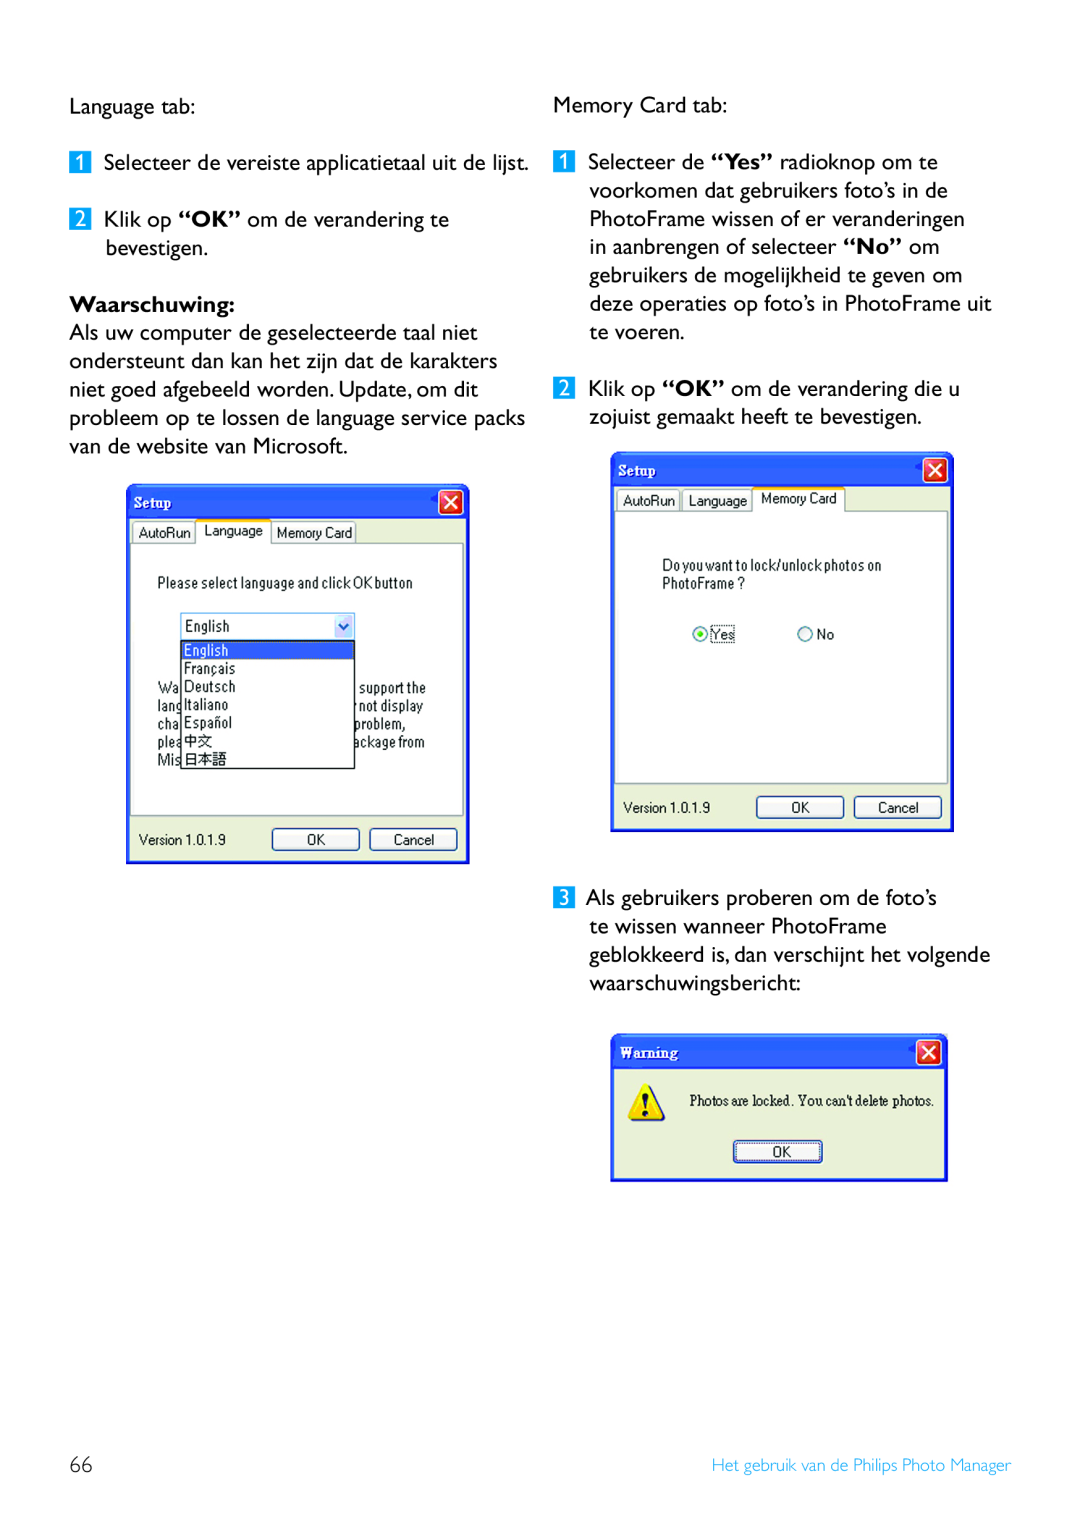 Philips 10FF2, 52PFL7432, 5FF2 Language tab, Klik op “OK” om de verandering te bevestigen, Waarschuwing, Memory Card tab 